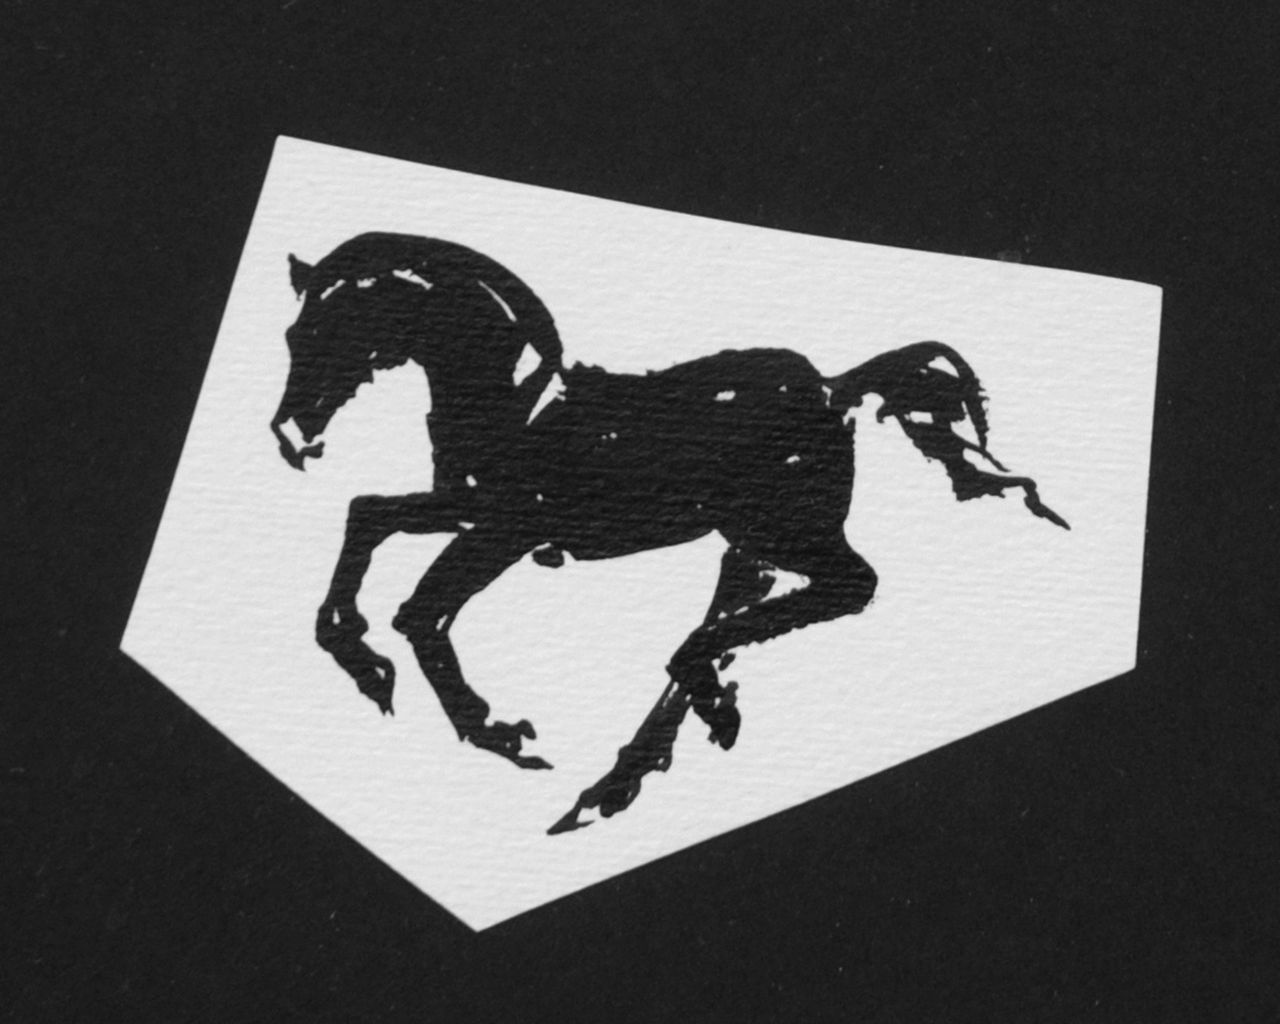 Oranje-Nassau (Prinses Beatrix) B.W.A. van | Beatrix Wilhelmina Armgard van Oranje-Nassau (Prinses Beatrix), Galopperend paard, potlood en Oost-Indische inkt op papier 7,3 x 8,2 cm, te dateren augustus 1960